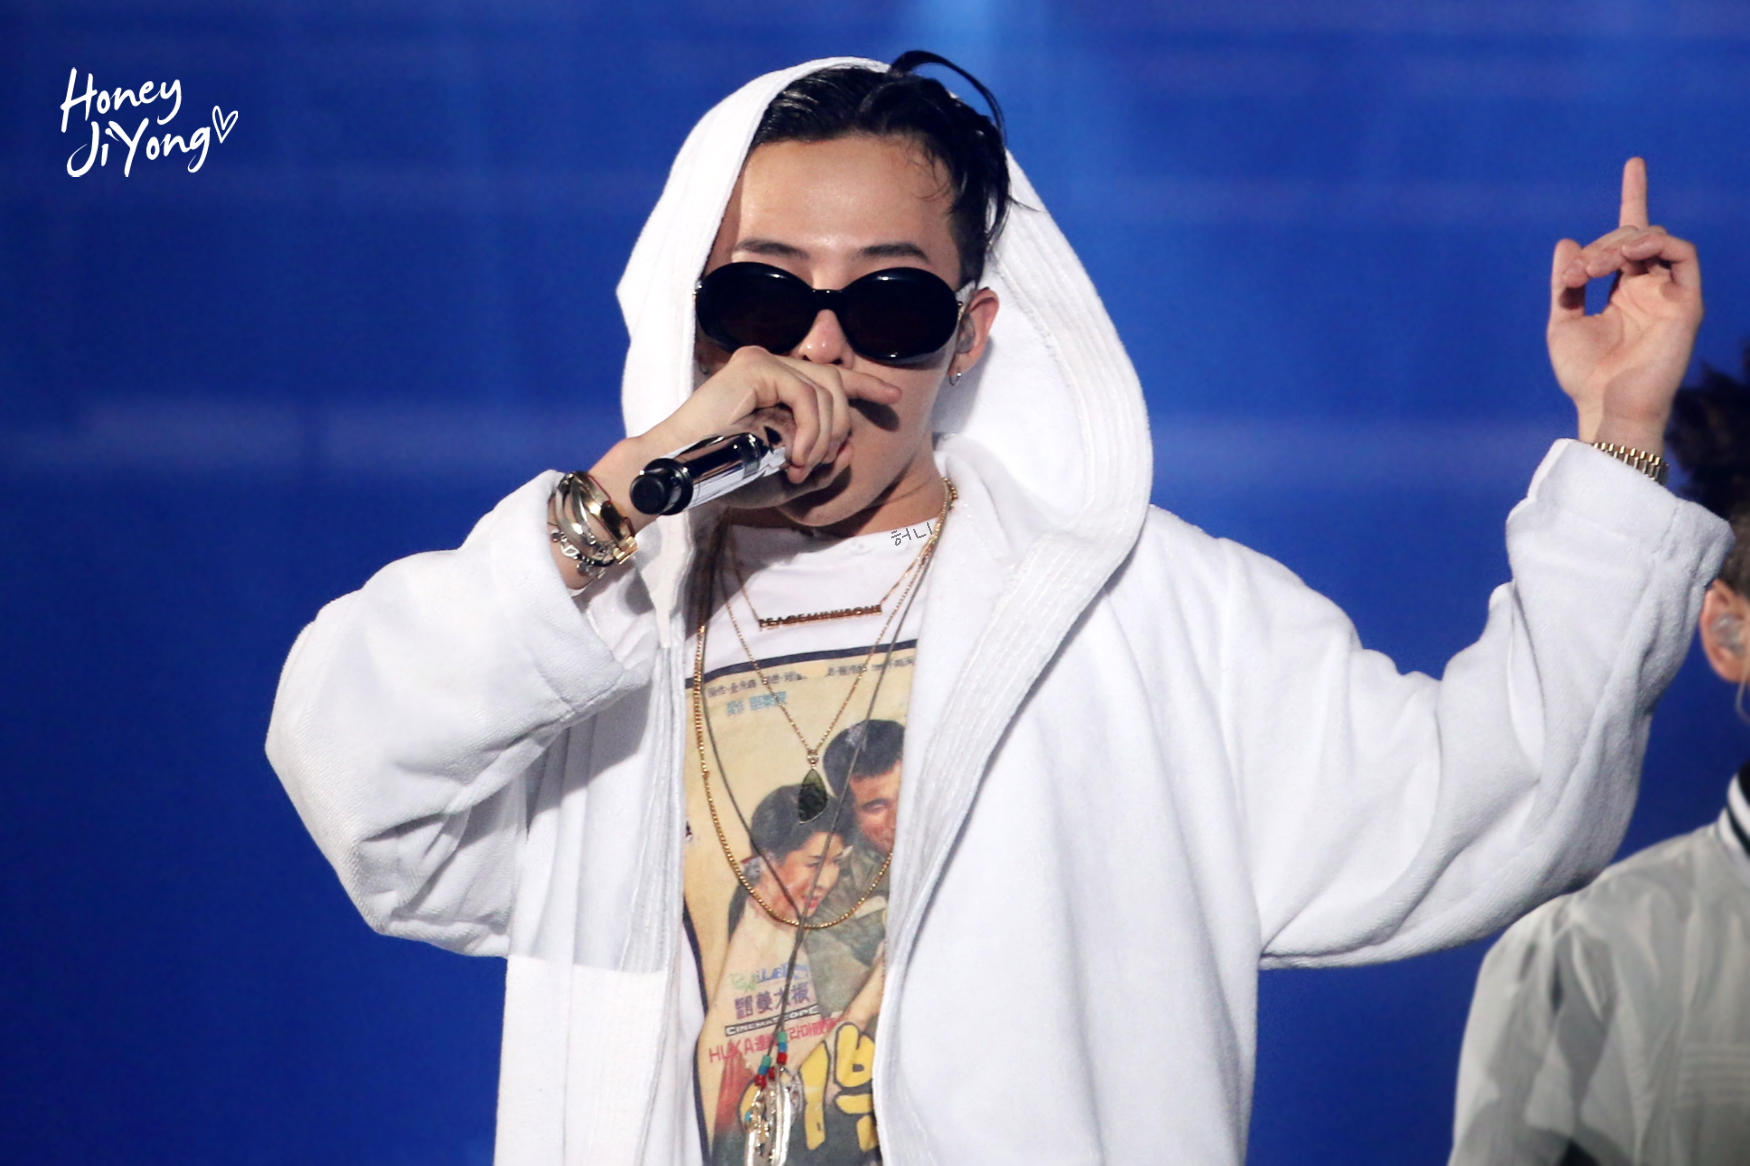 BIGBANG 2015 World Tour 'MADE' in Seoul April 2015 - photo by HoneyJiYong